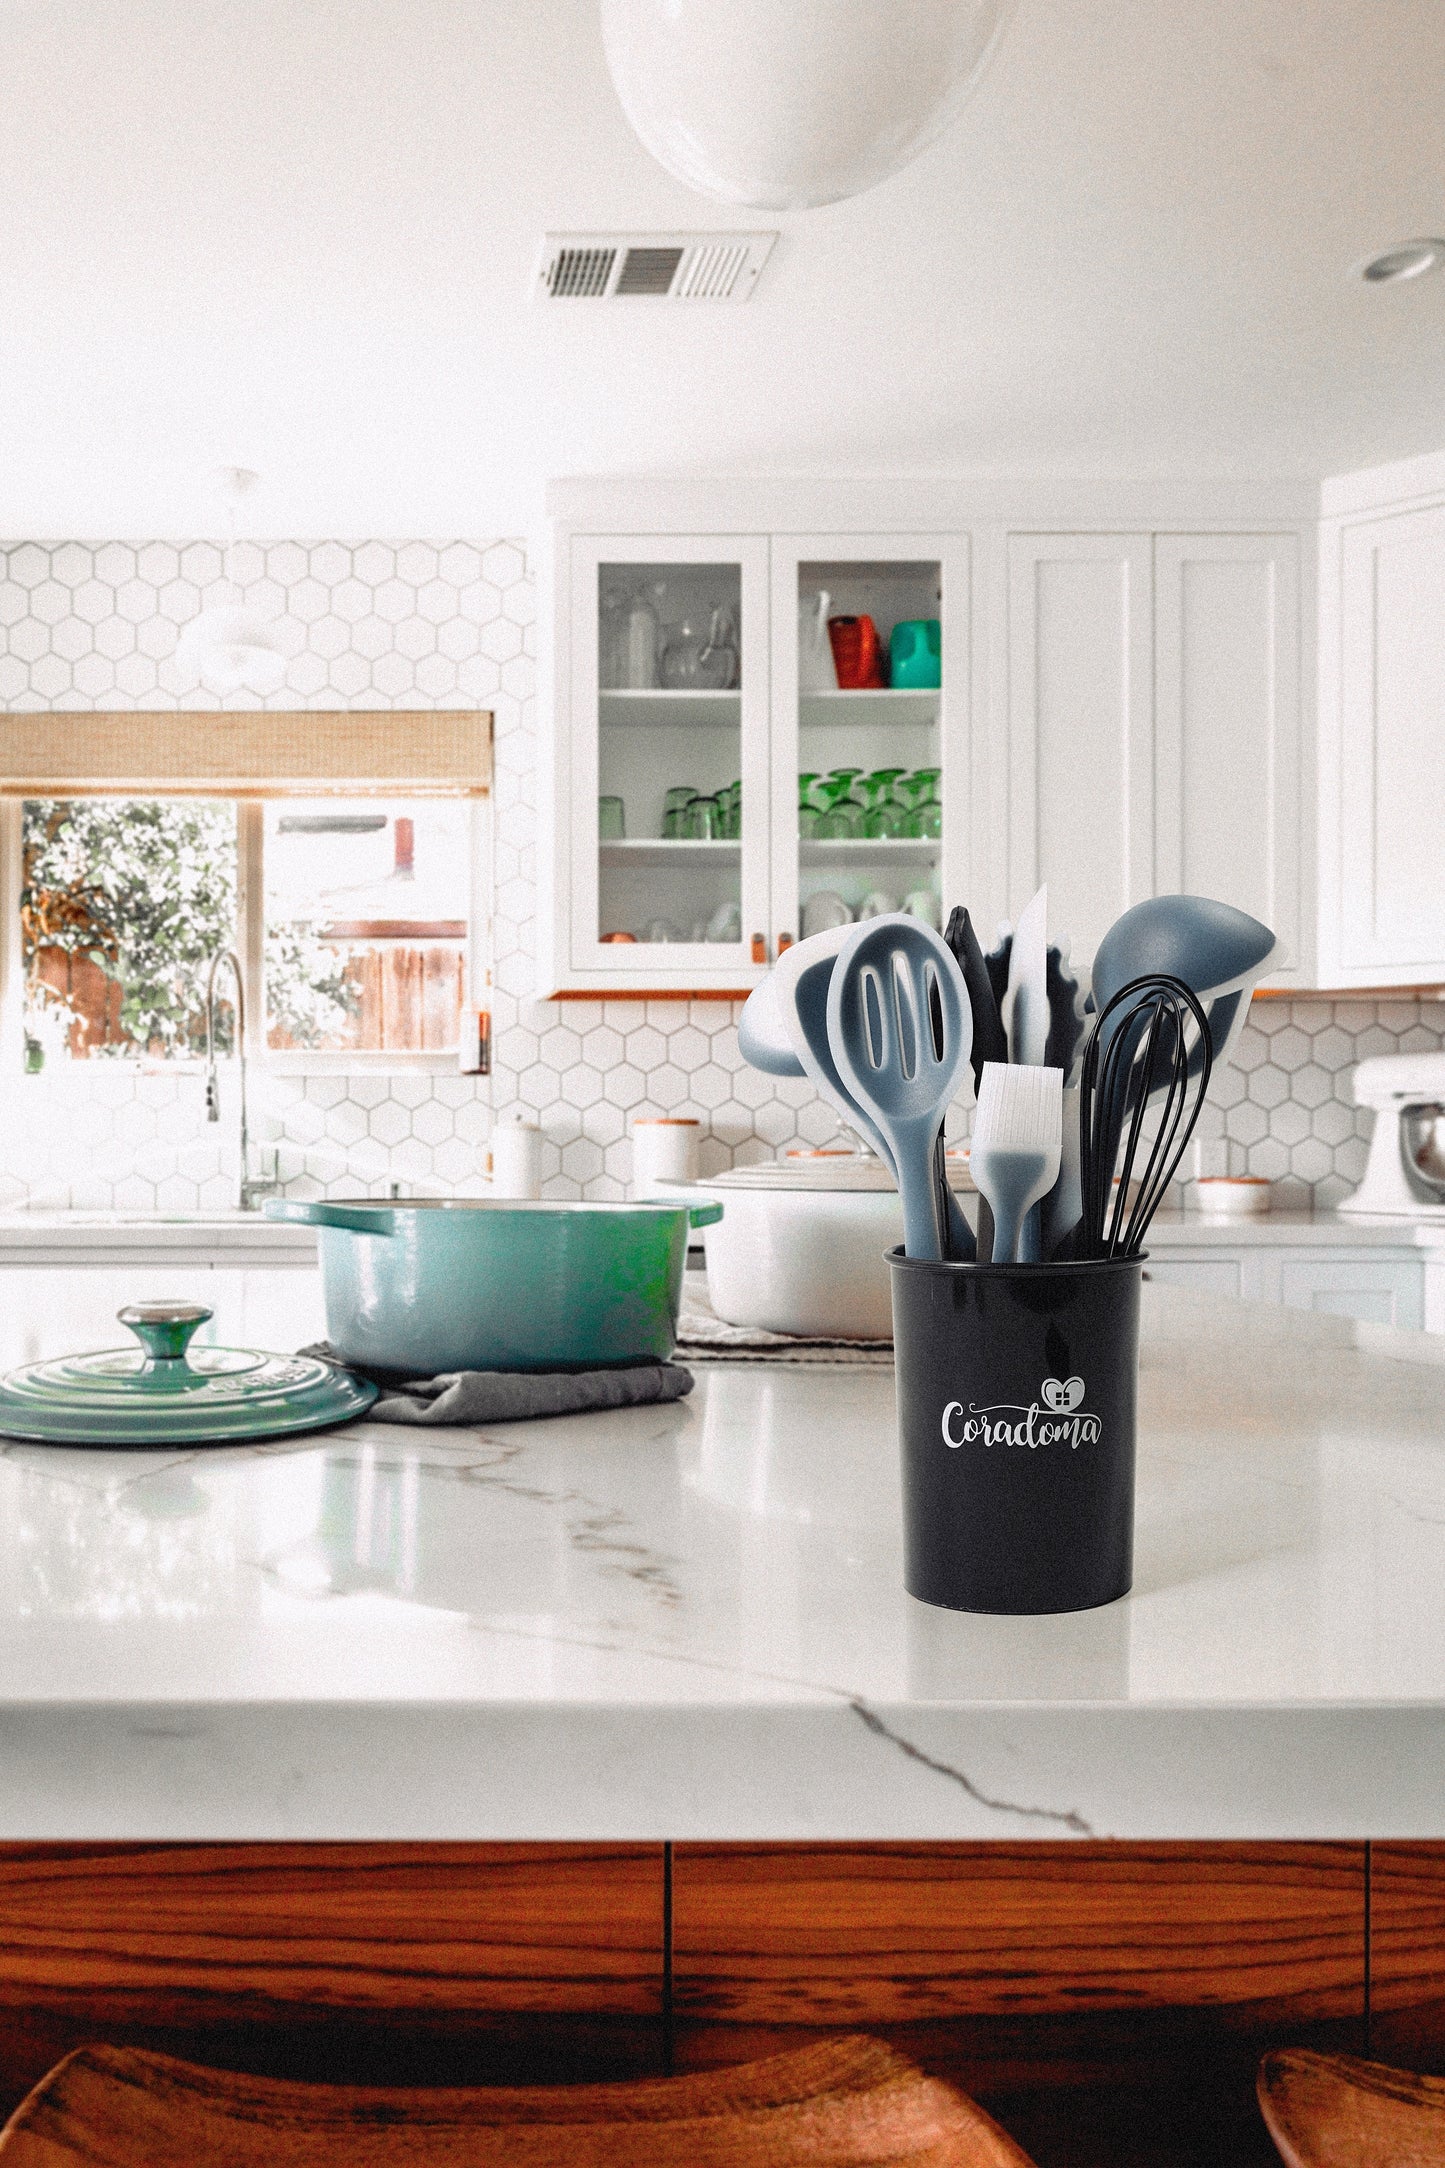 Coradoma® Silikon Geschirrset Küche | Küchenutensilien 12-teiliges Küchenhelfer Set, Kochbesteck